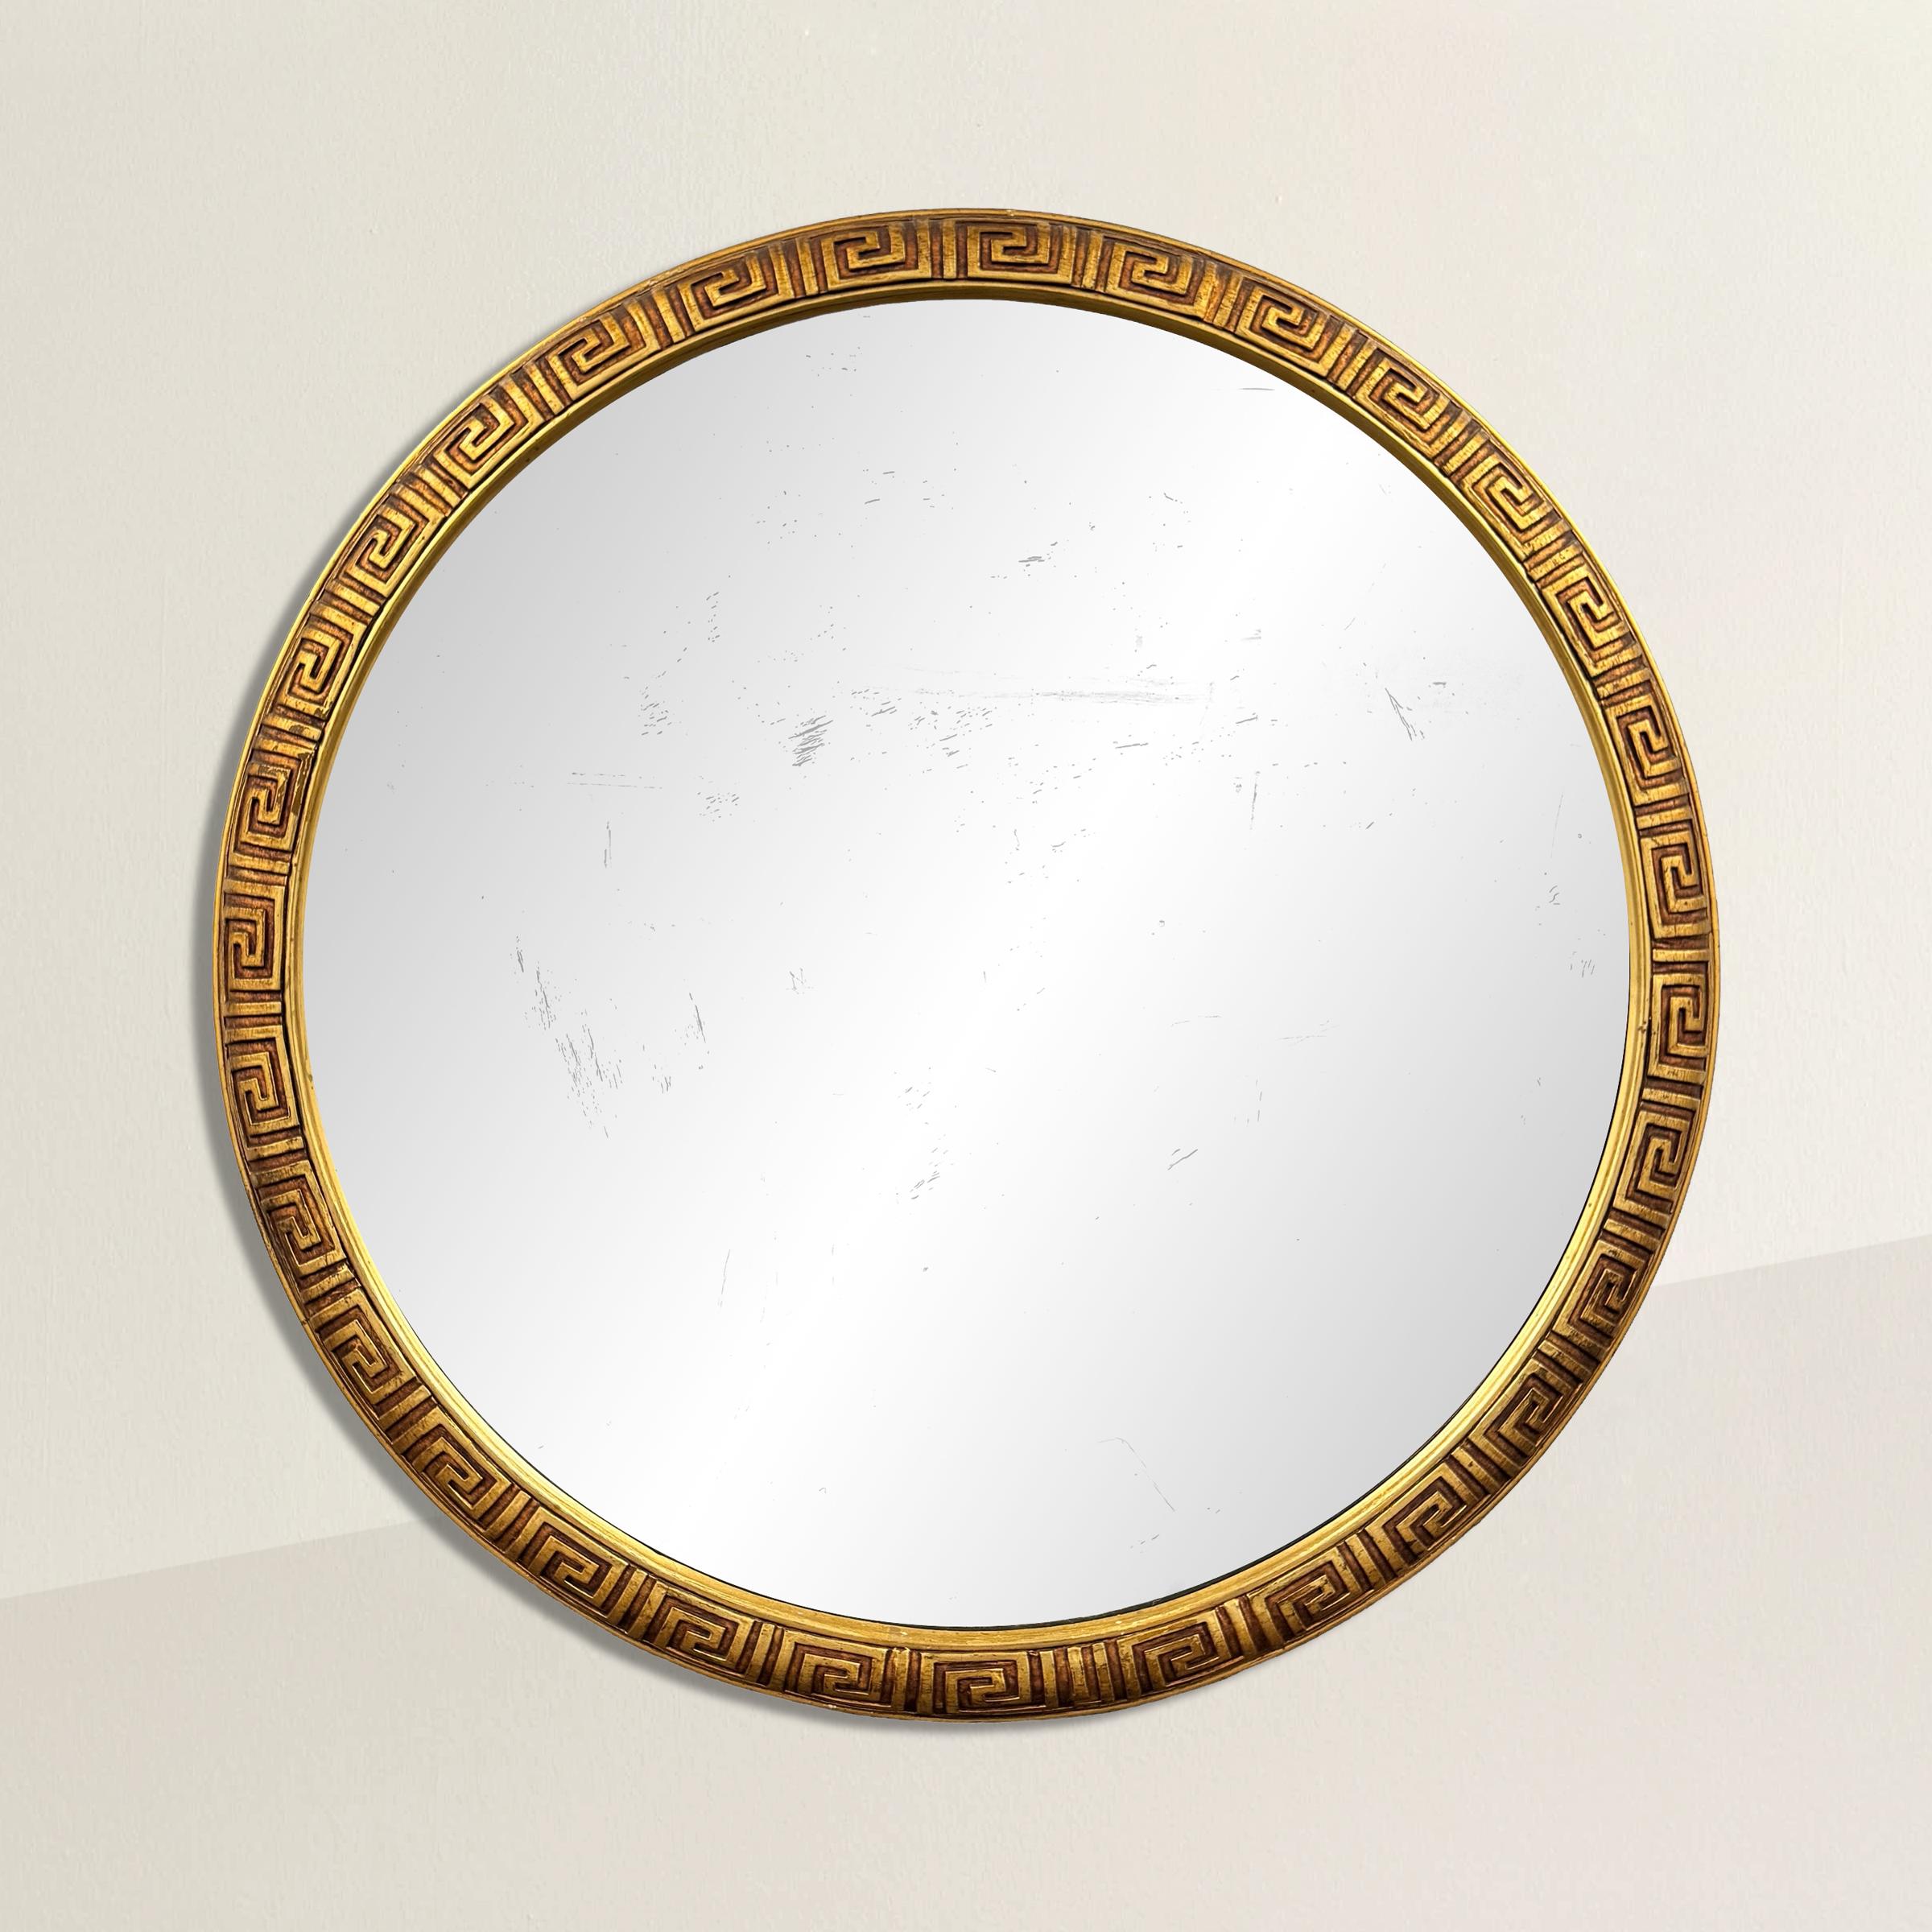 Ce miroir rond américain du milieu du 20e siècle possède un cadre en bois doré, sculpté de manière complexe avec un motif intemporel de clé grecque. Le motif de la clé grecque, dérivé de l'architecture et du design de la Grèce antique, symbolise